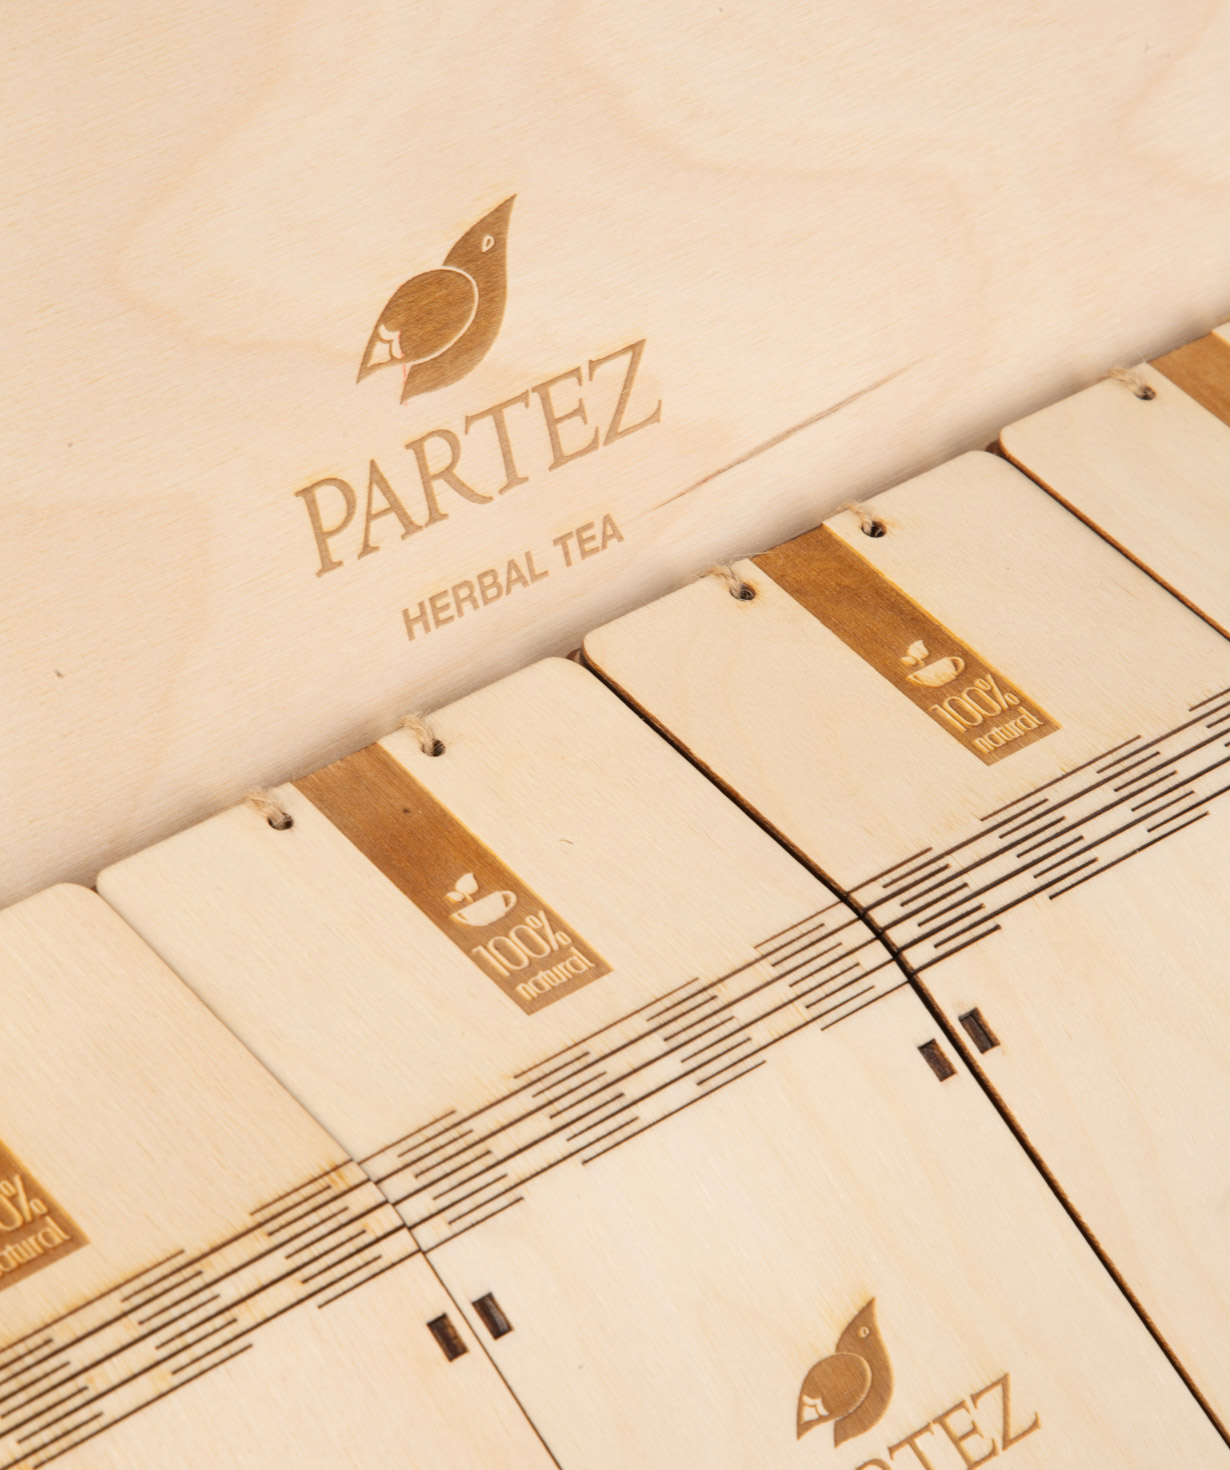 Коллекция `Partez` чаев, в деревянной сувенирной коробке